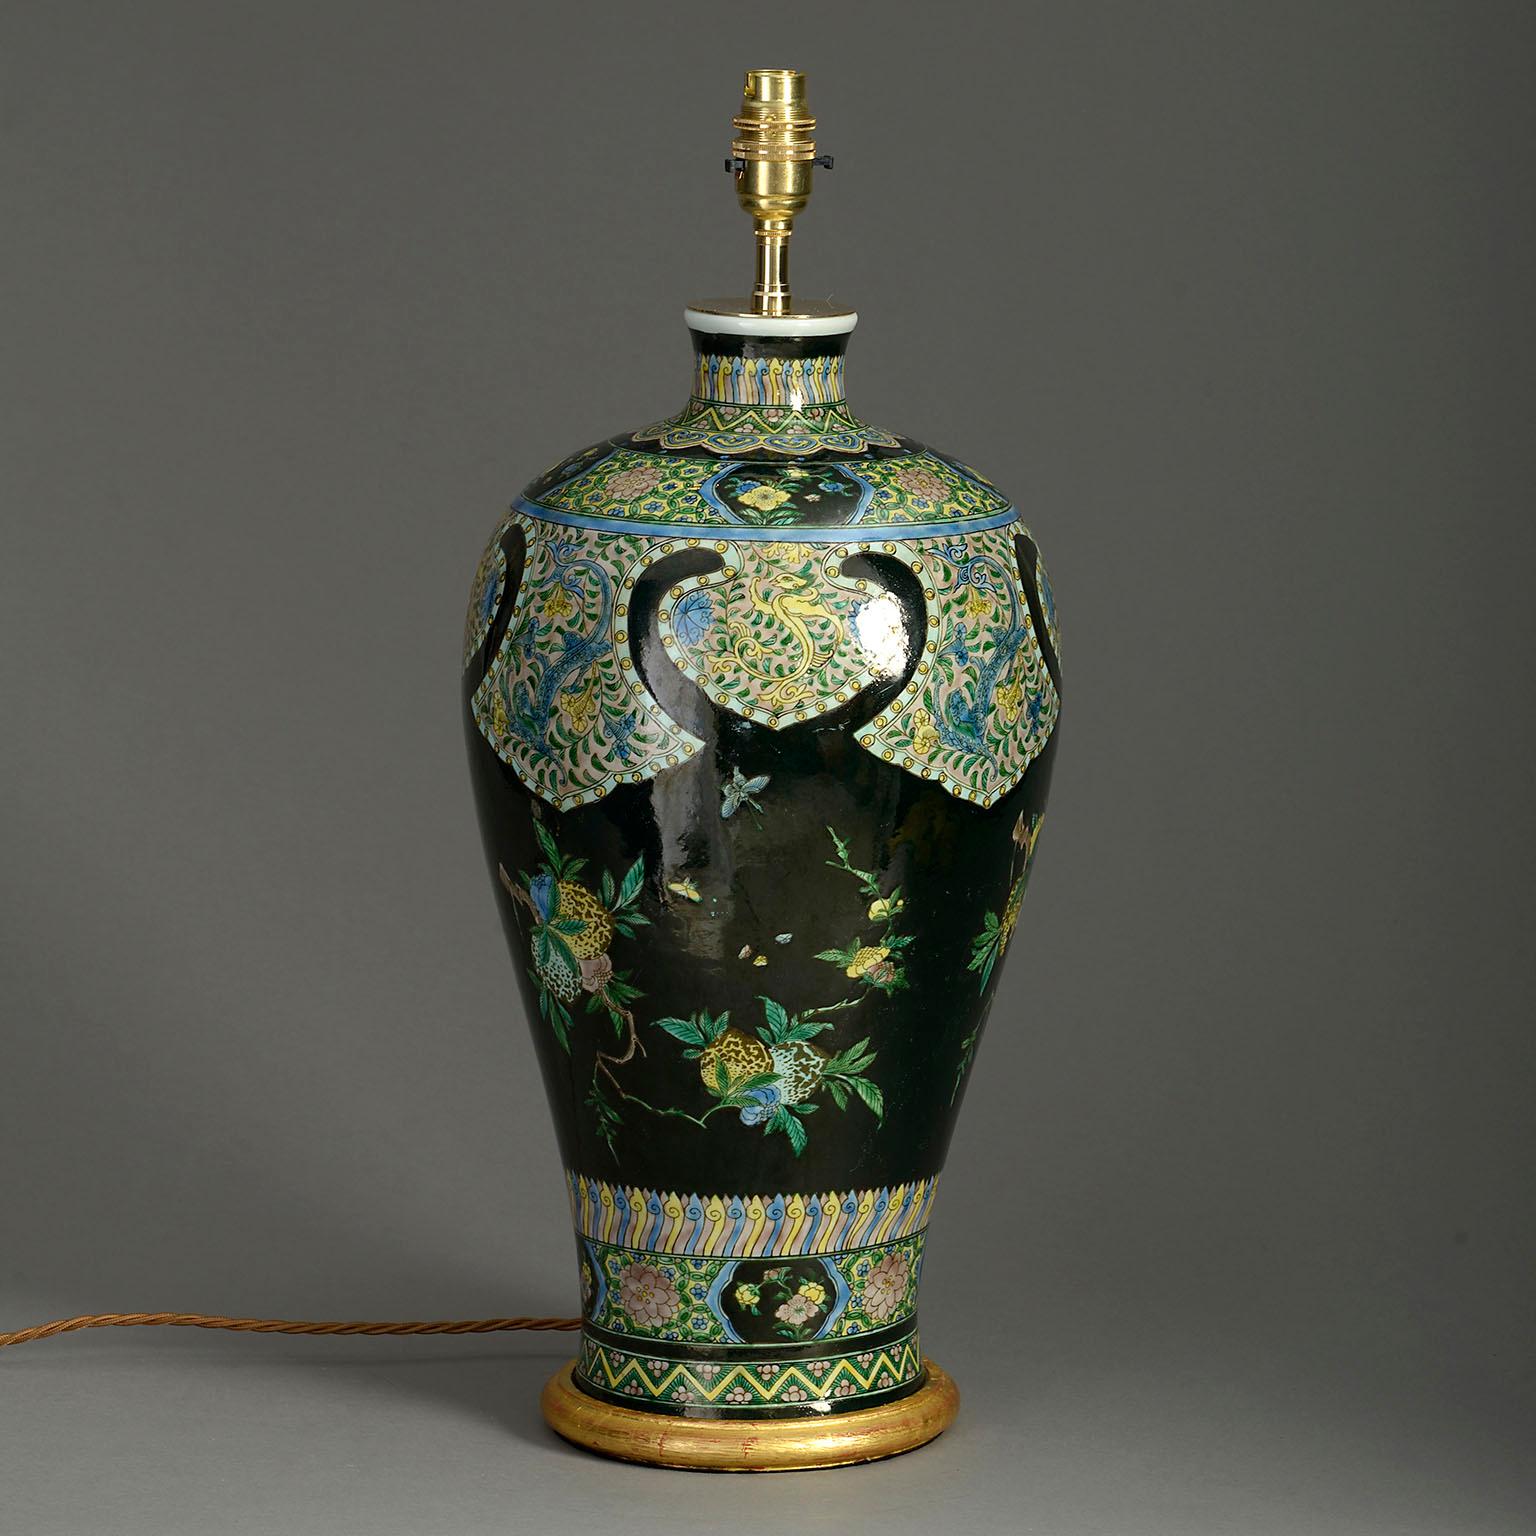 Vase en porcelaine de la famille noire de la fin du XIXe siècle, décoré de papillons et d'arbres fruitiers en abondance dans des glaçures polychromes. Maintenant monté comme une lampe de table avec une base en bois doré tournée à la main.

Les